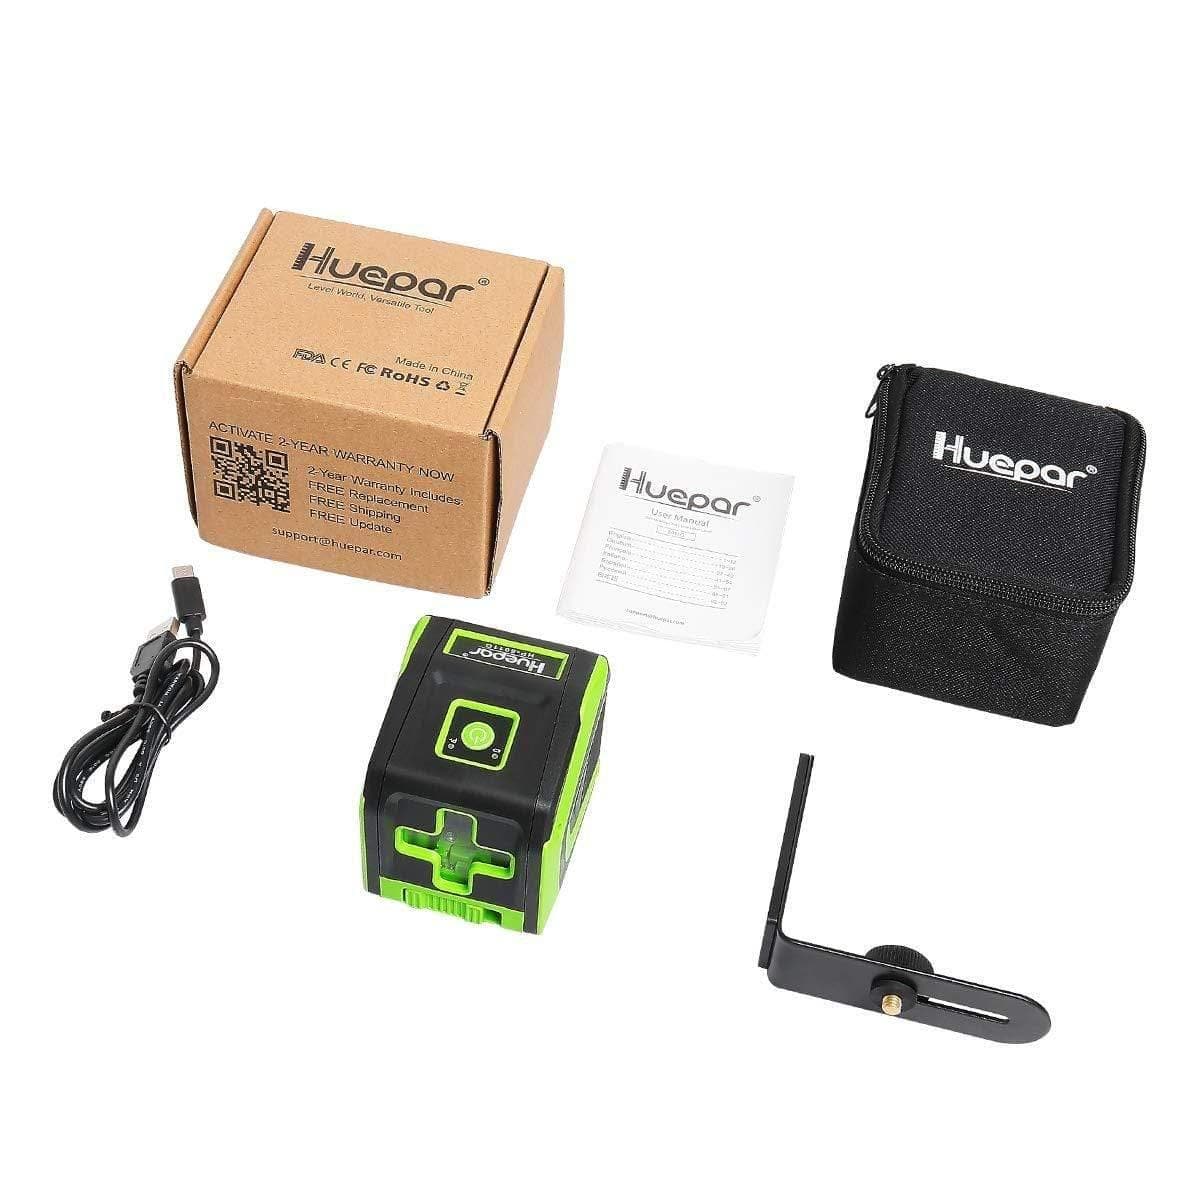 Huepar 5011G - Green Portable Line Laser with Pulse Mode & 360° Magnetic Rotating Base - HUEPAR US